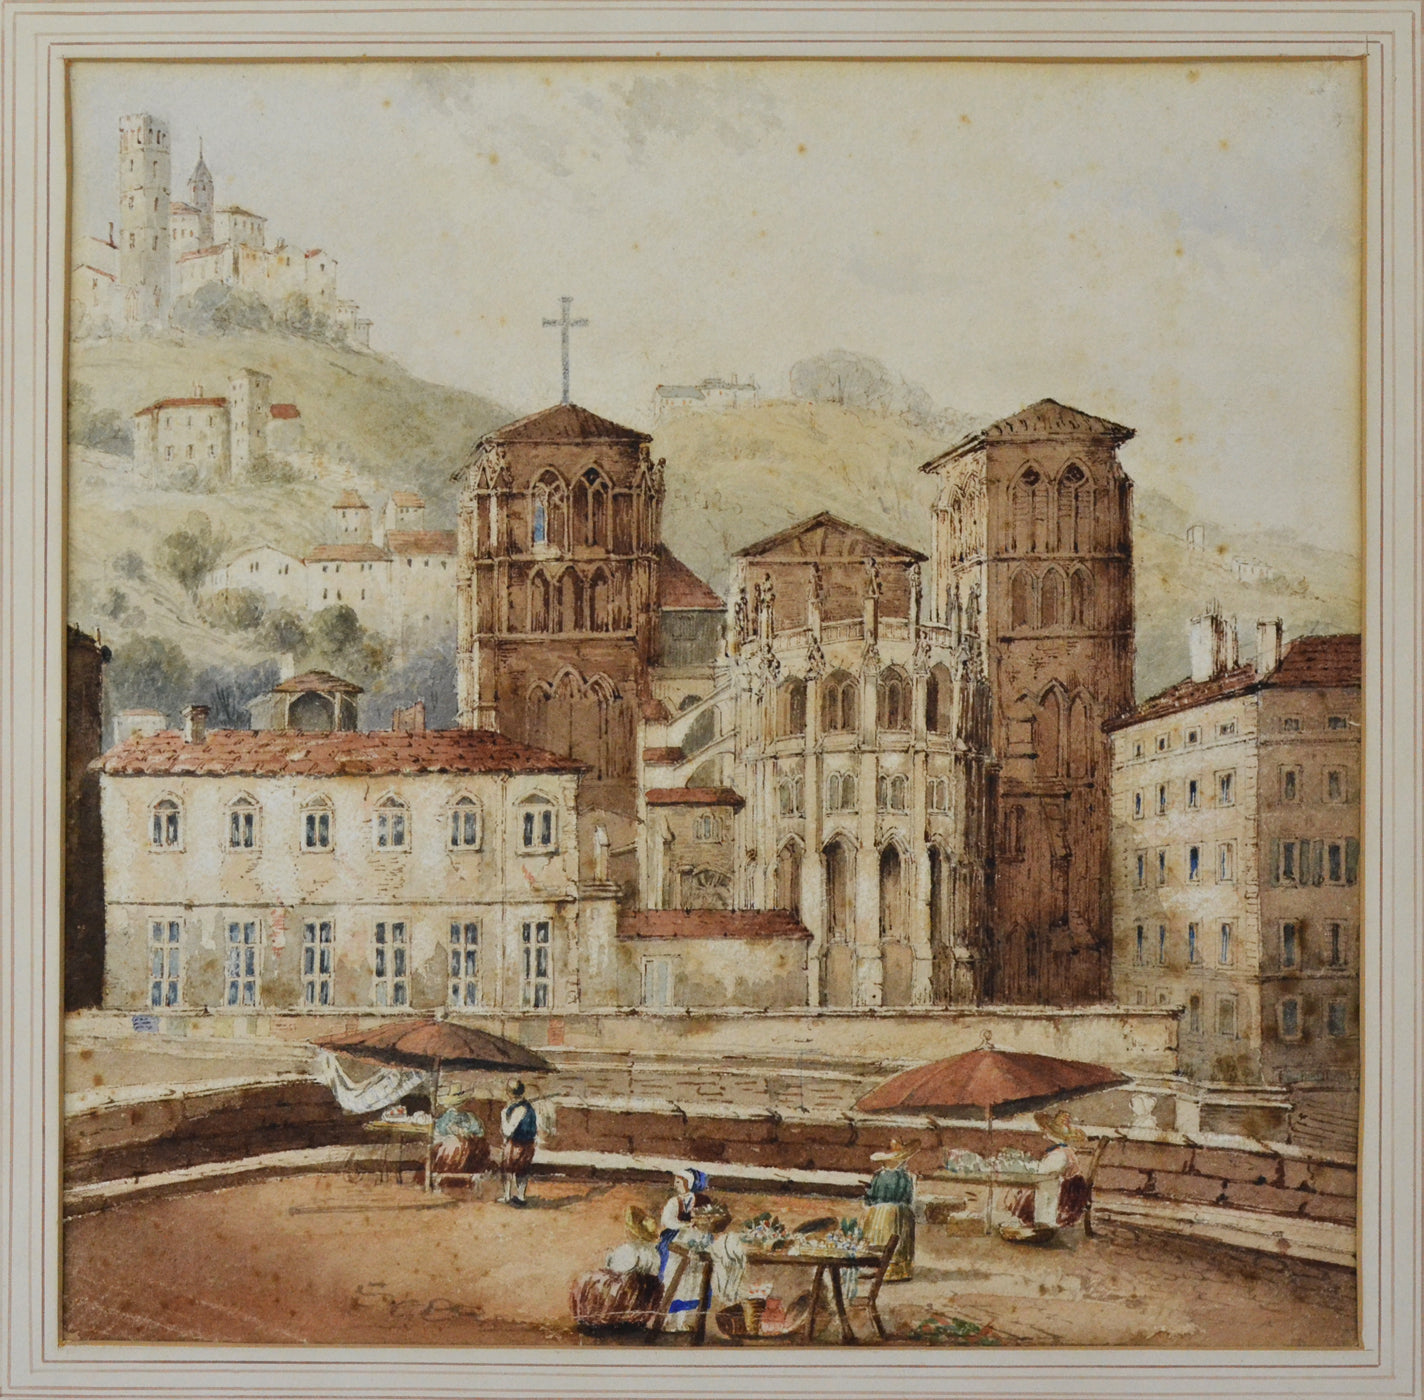 Lyon - Old Town